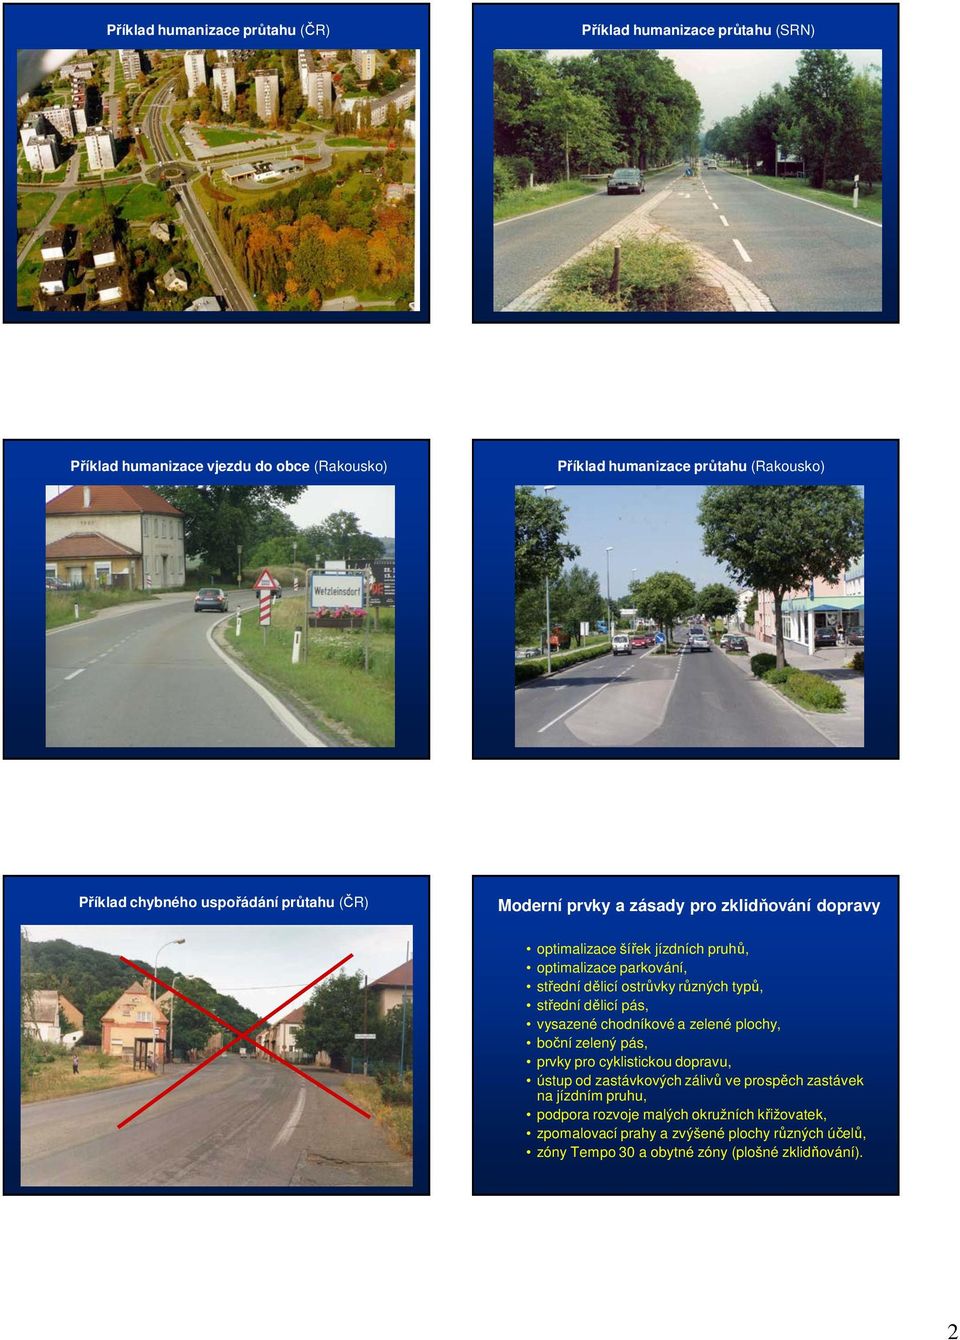 různých typů, střední dělicí pás, vysazené chodníkové a zelené plochy, boční zelený pás, prvky pro cyklistickou dopravu, ústup od zastávkových zálivů ve prospěch